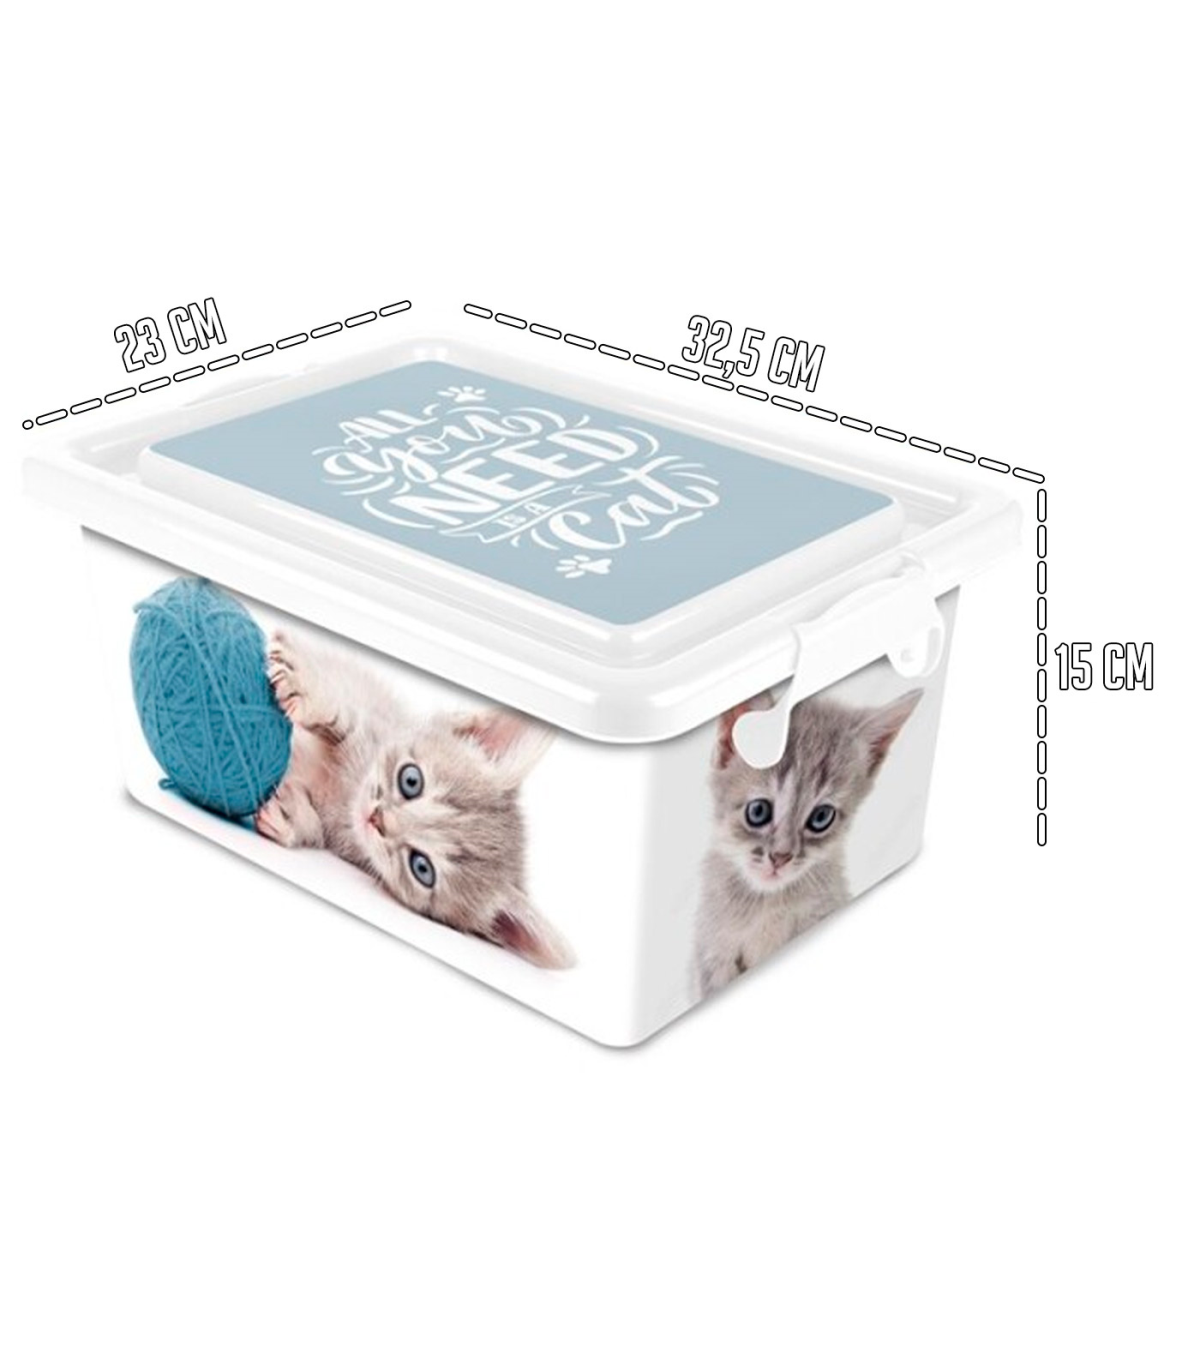 Tradineur – Caja de almacenamiento – Diseño Gatos – Capacidad de 7